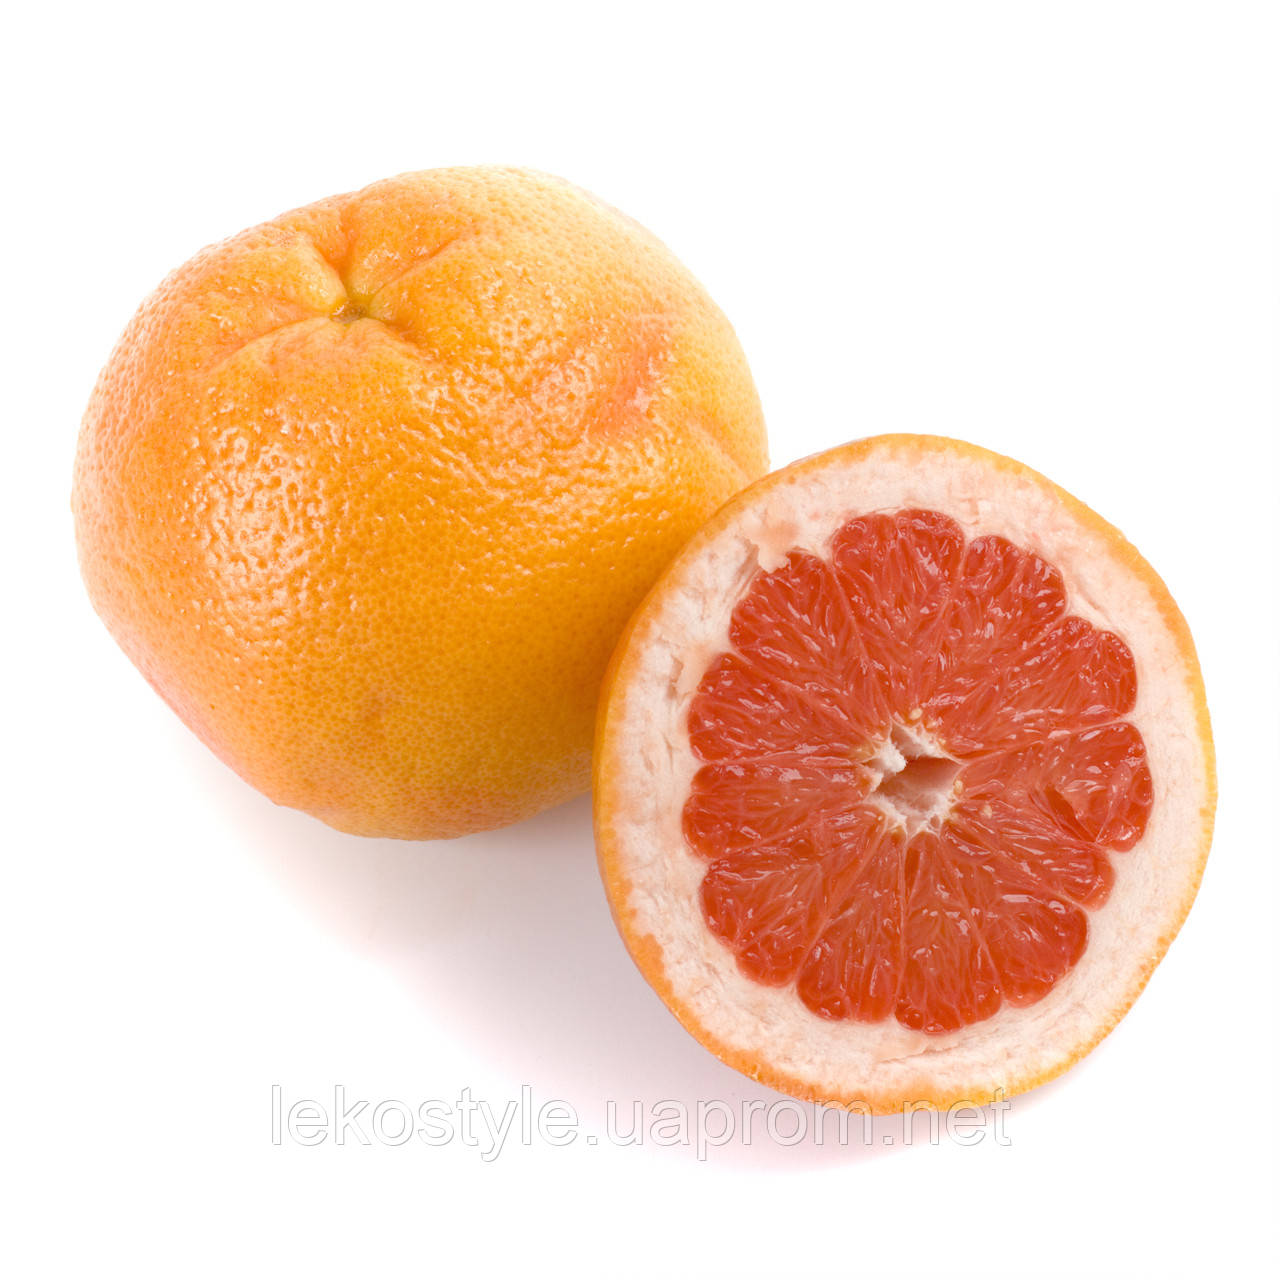 Ефірна олія грейпфрута від стресу і зайвої ваги